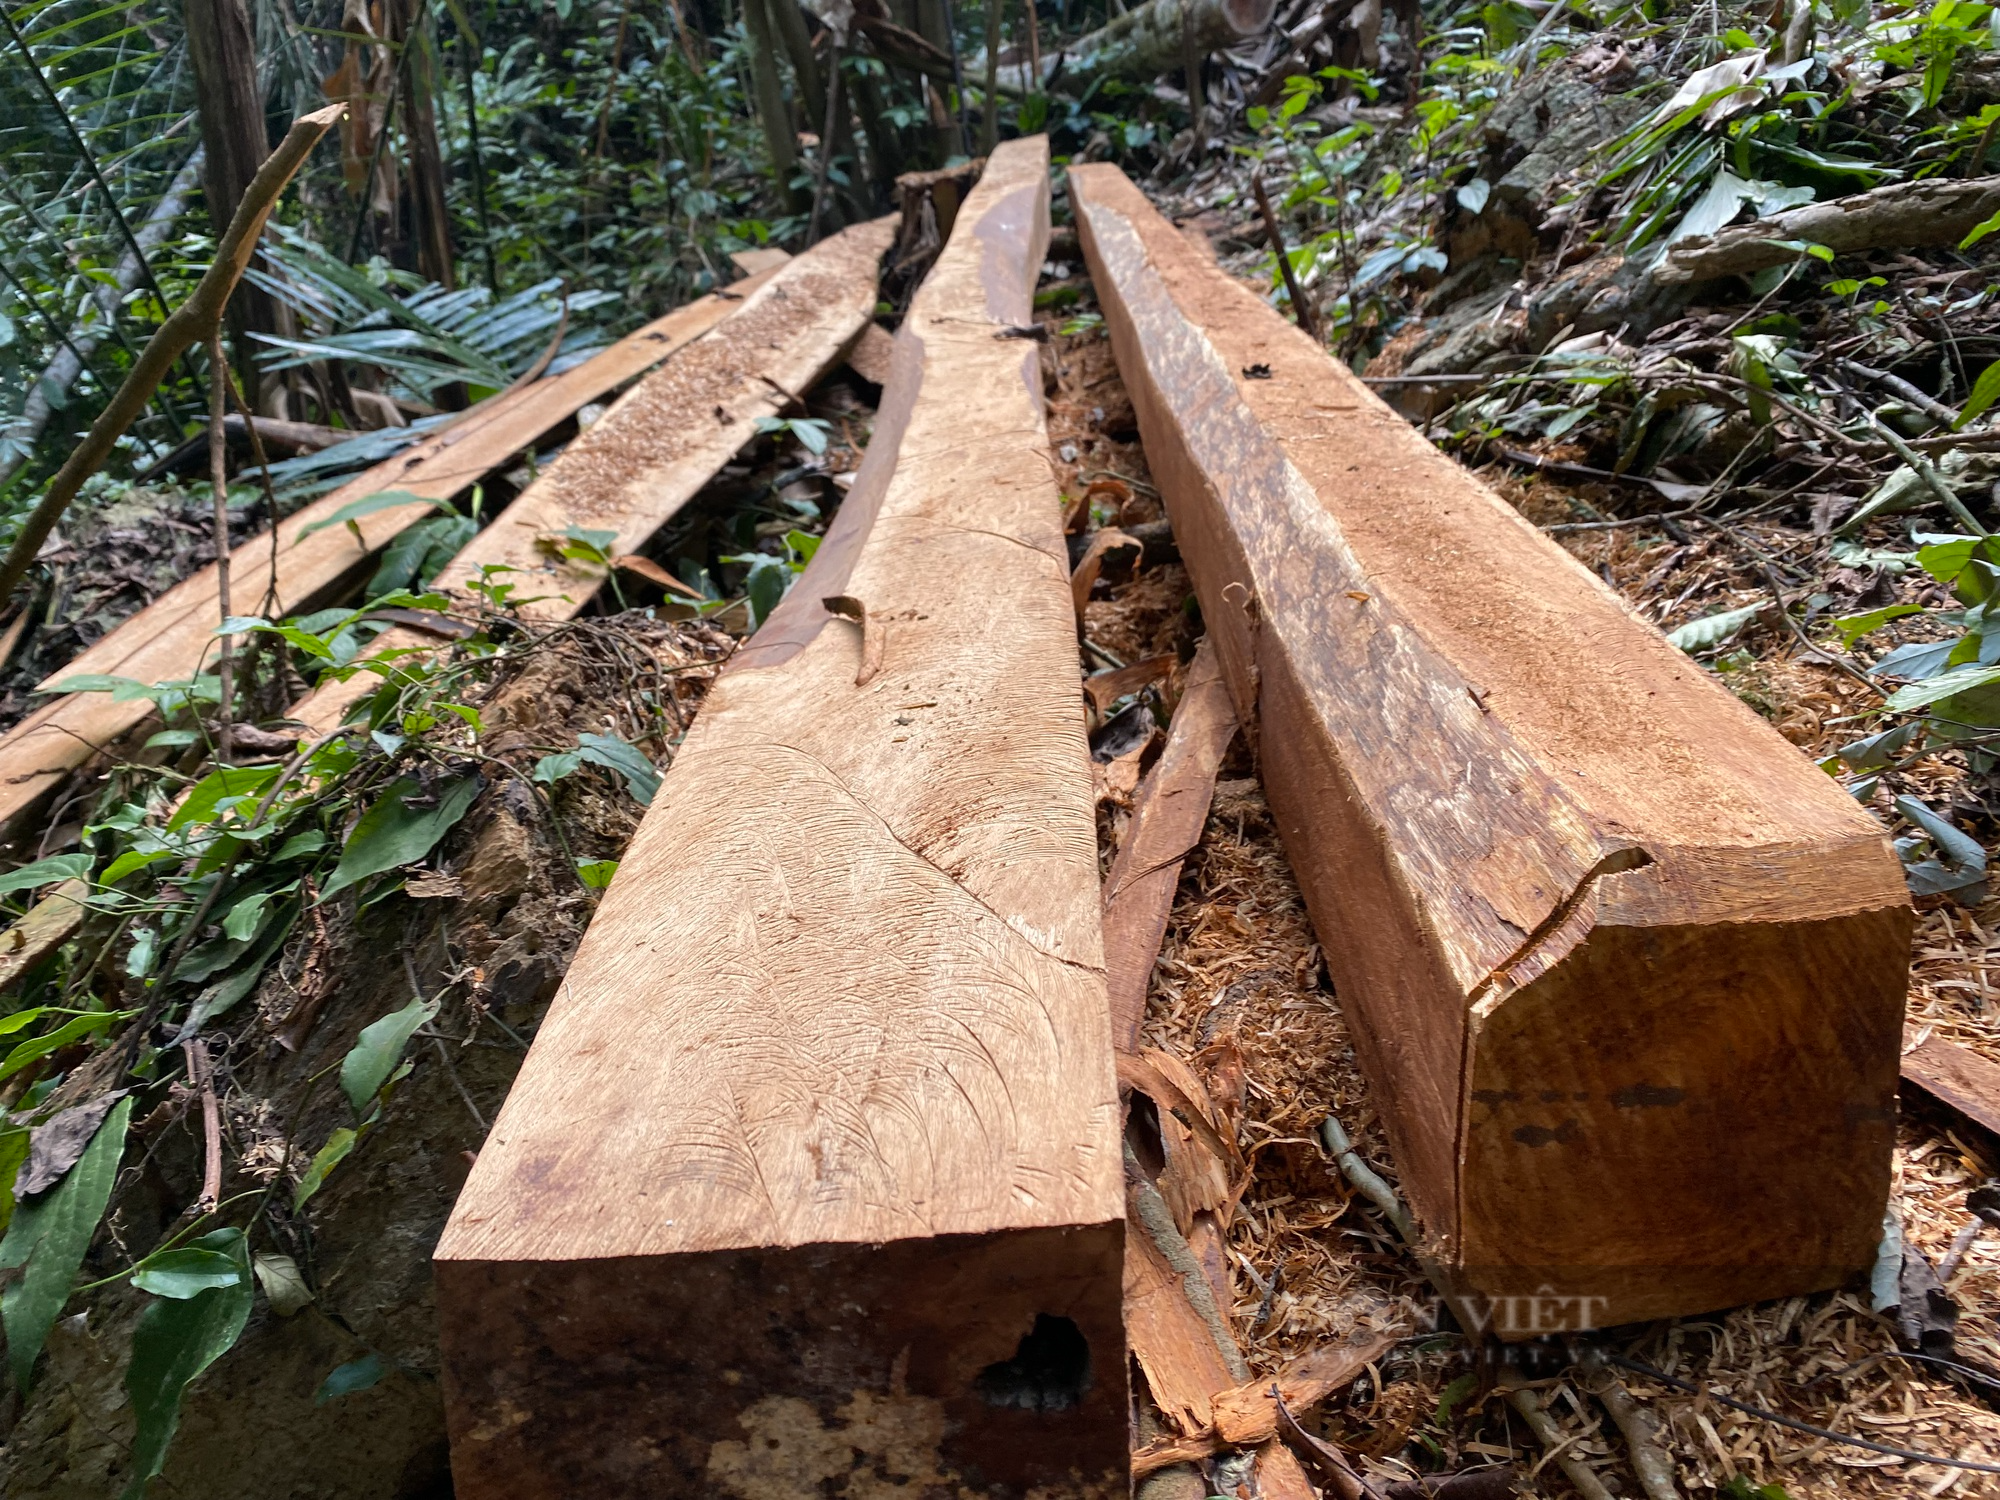 Chủ tịch Uỷ ban nhân dân tỉnh Lai Châu chỉ đạo xử lý nghiêm vụ phá rừng ở Sìn Hồ - Ảnh 2.